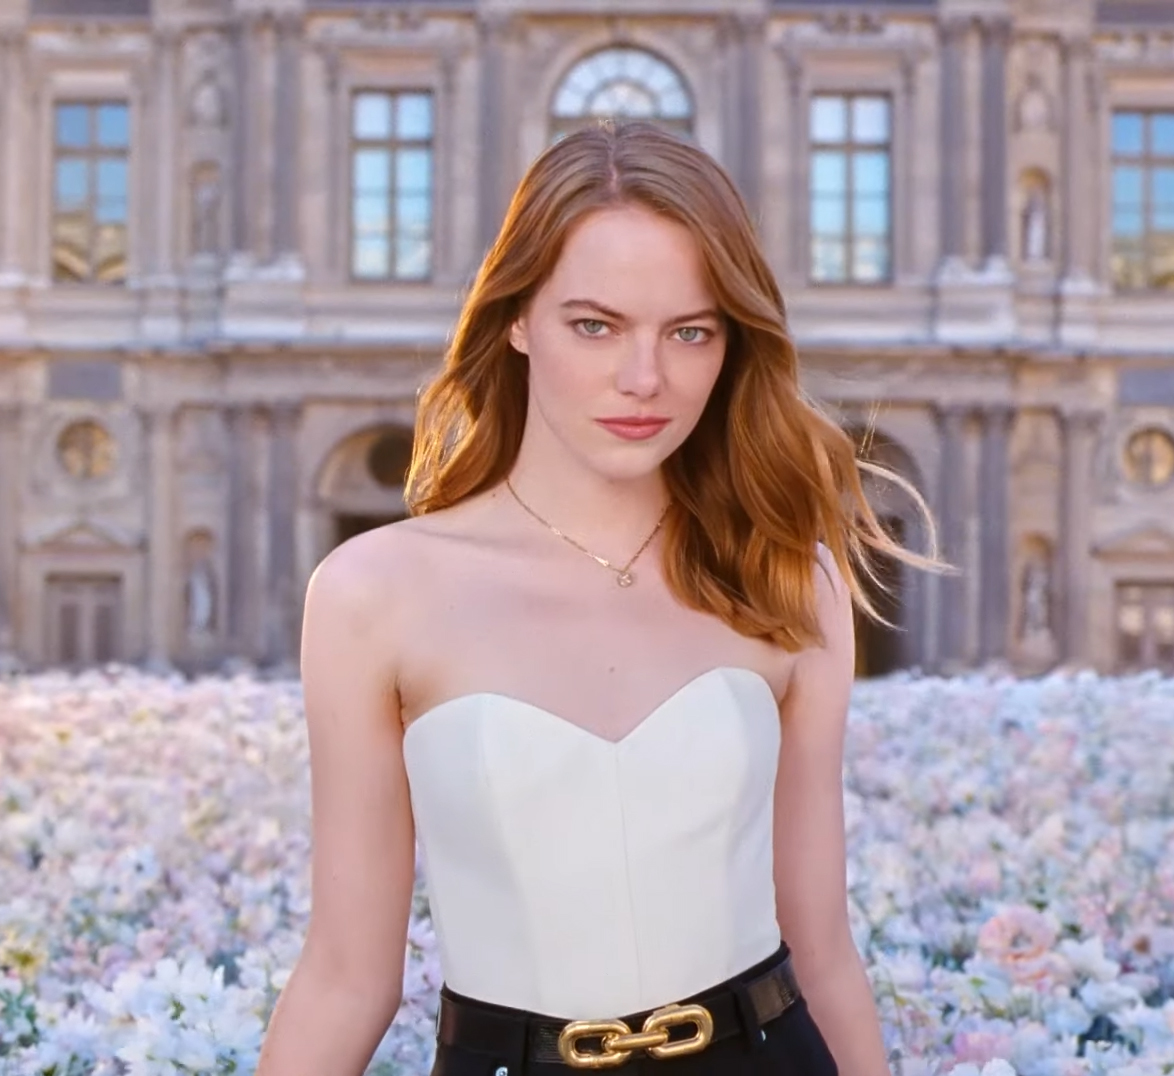 Emma Stone protagonista del video del jus Attrape-Rêves di Louis Vuitton